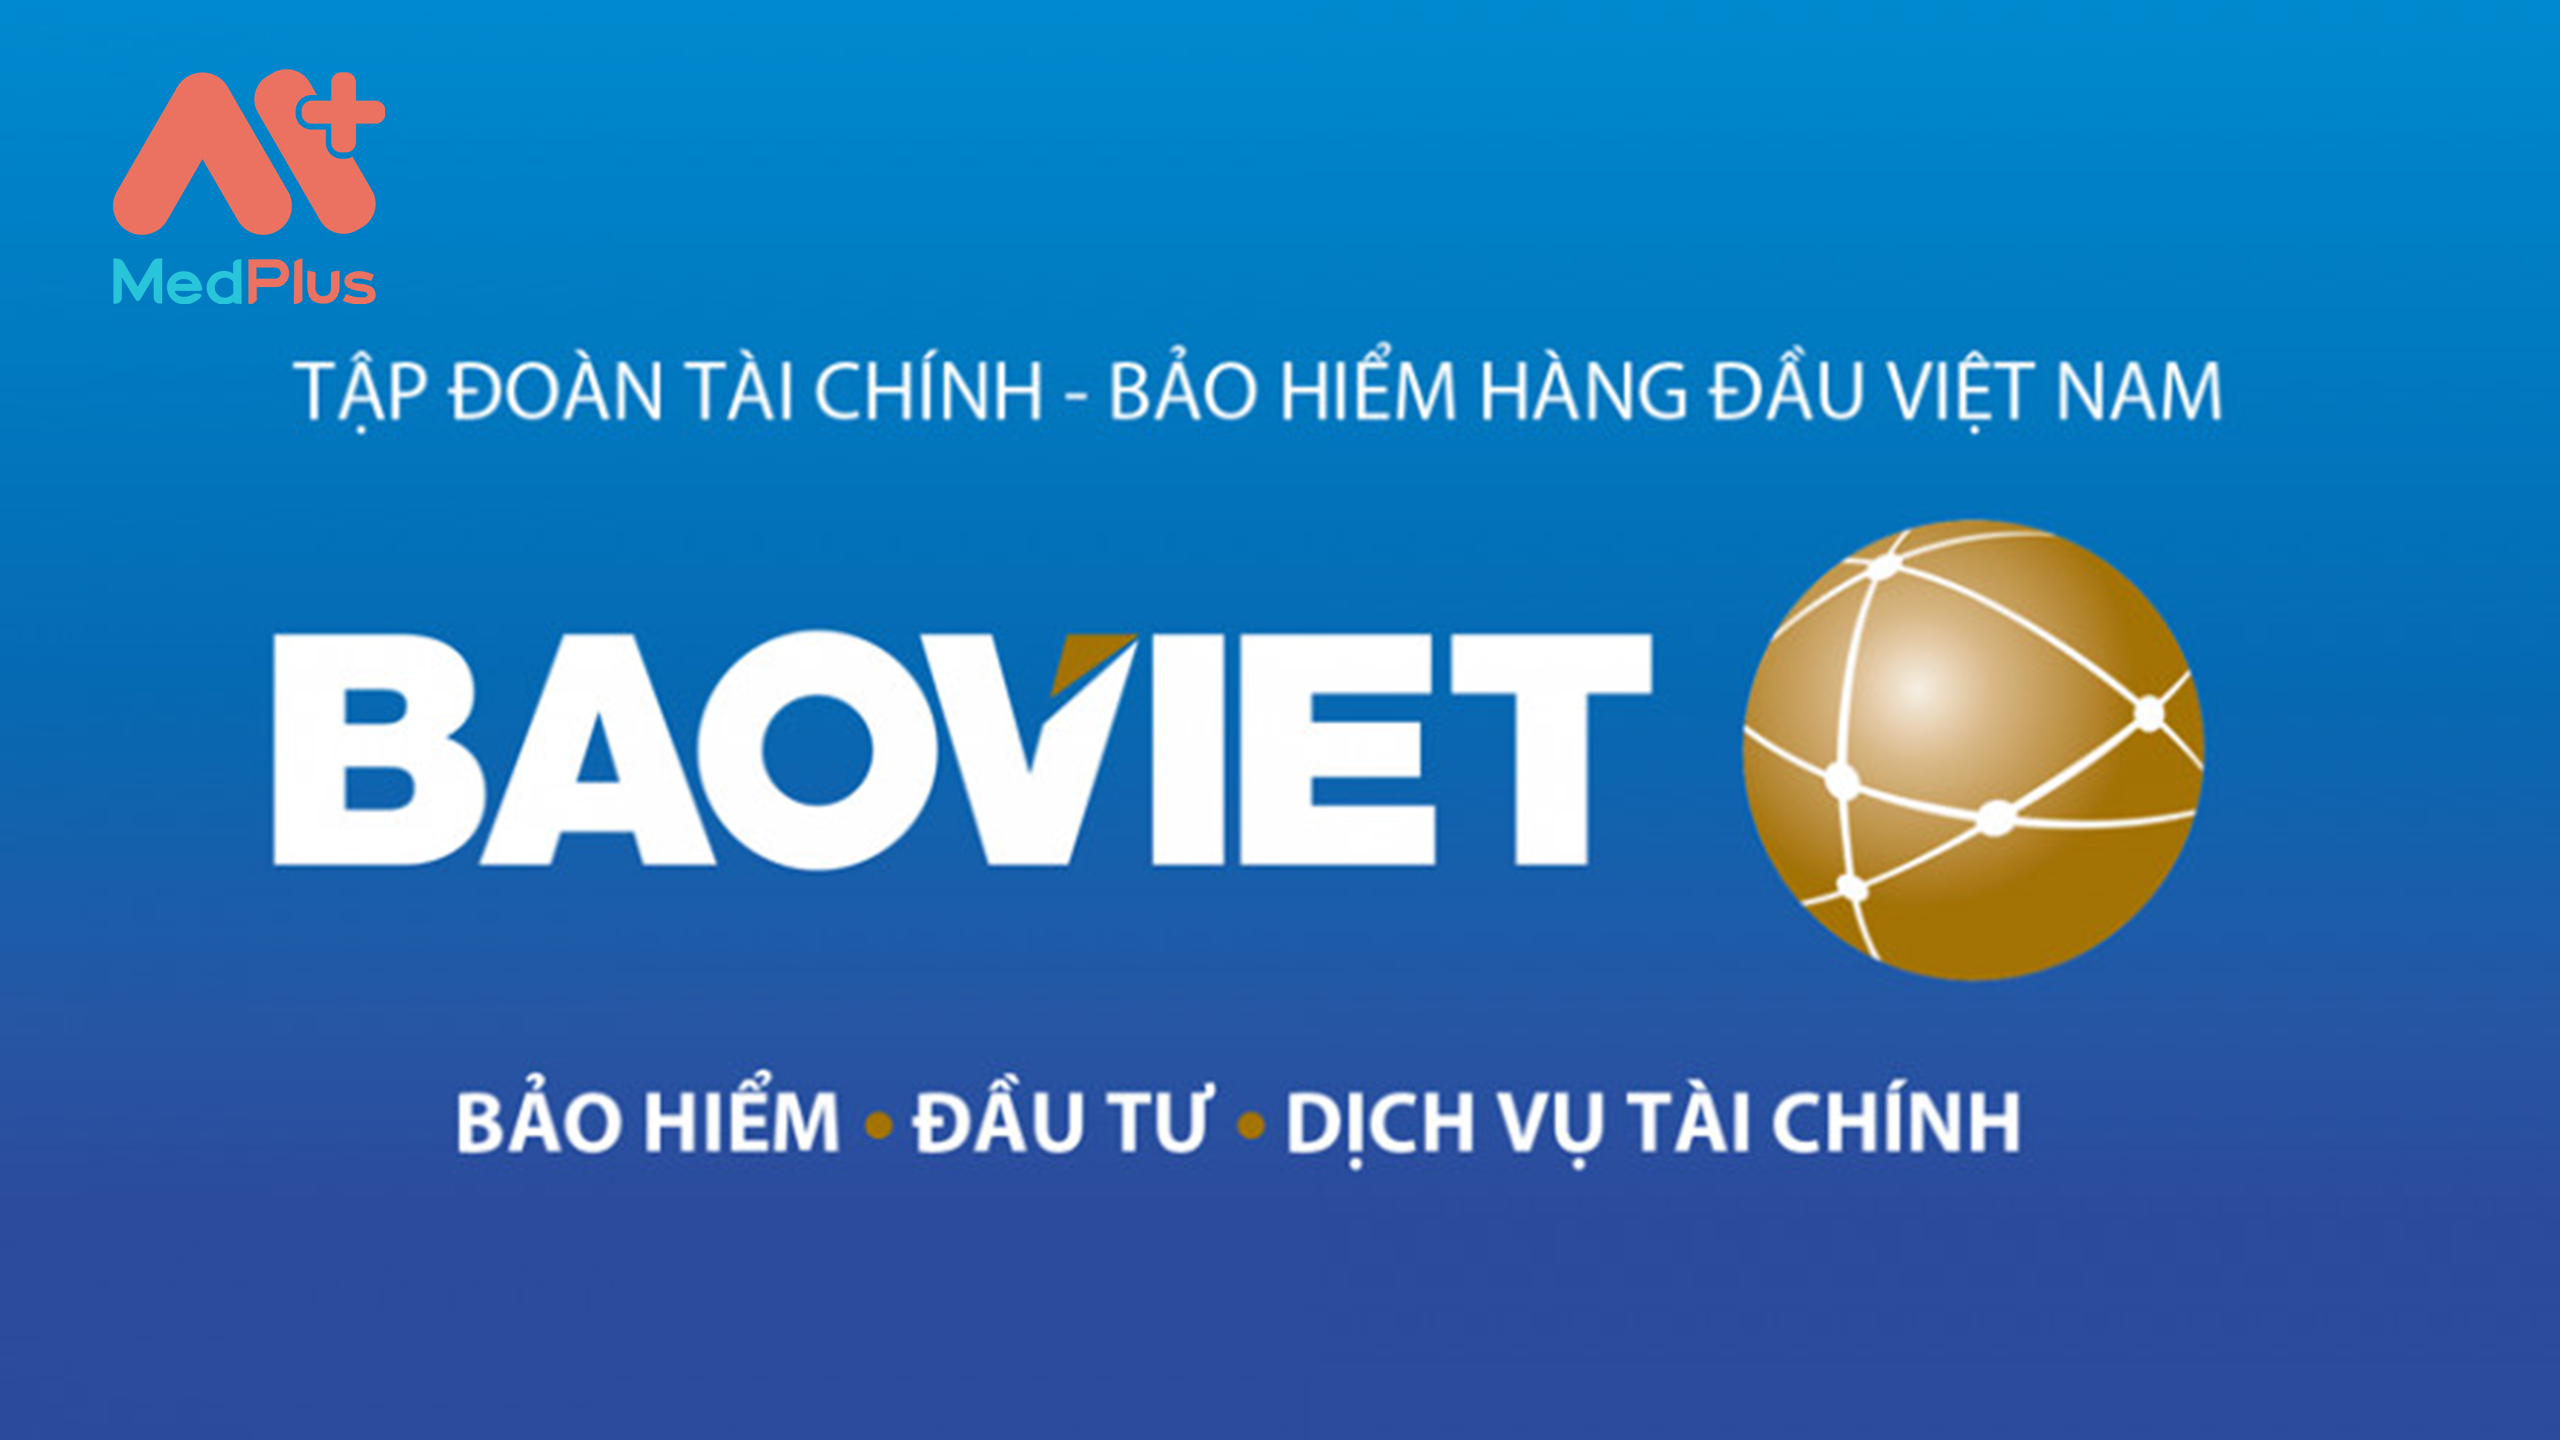  Bảo hiểm Bảo Việt là công ty bảo hiểm uy tín trên thị trường hiện nay